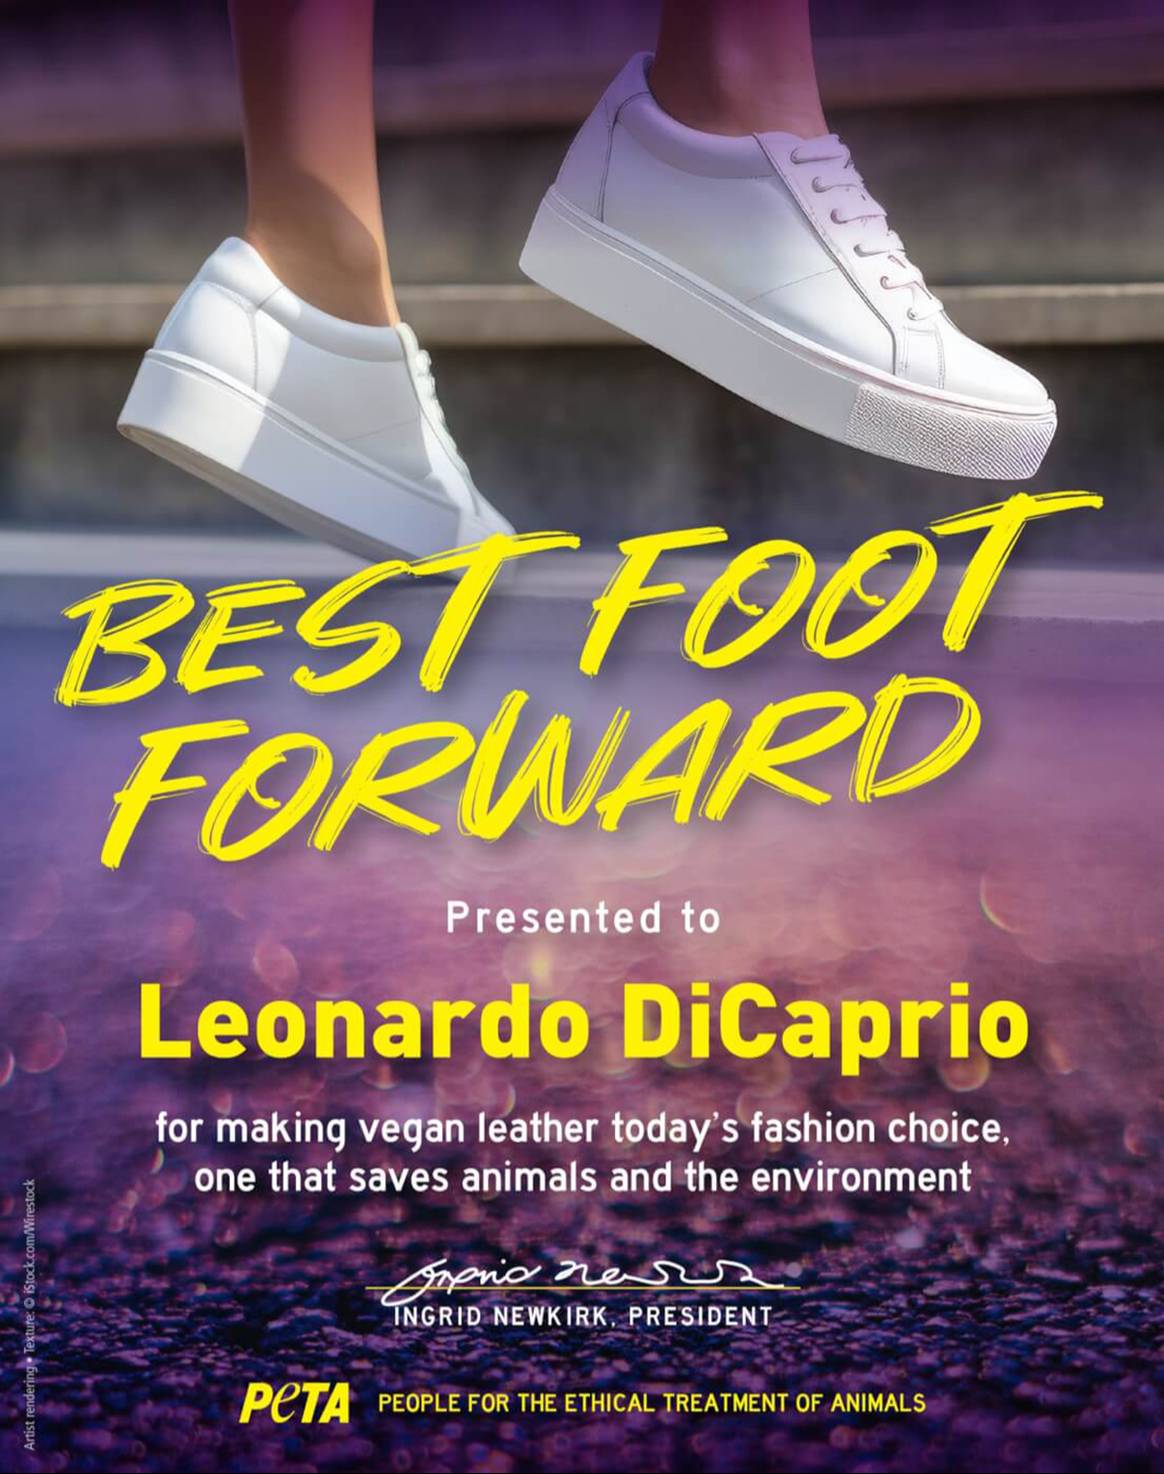 Cartel con el anuncio de Leonardo DiCaprio como primer ganador del nuevo premio “Best Foot Forward” de Peta.